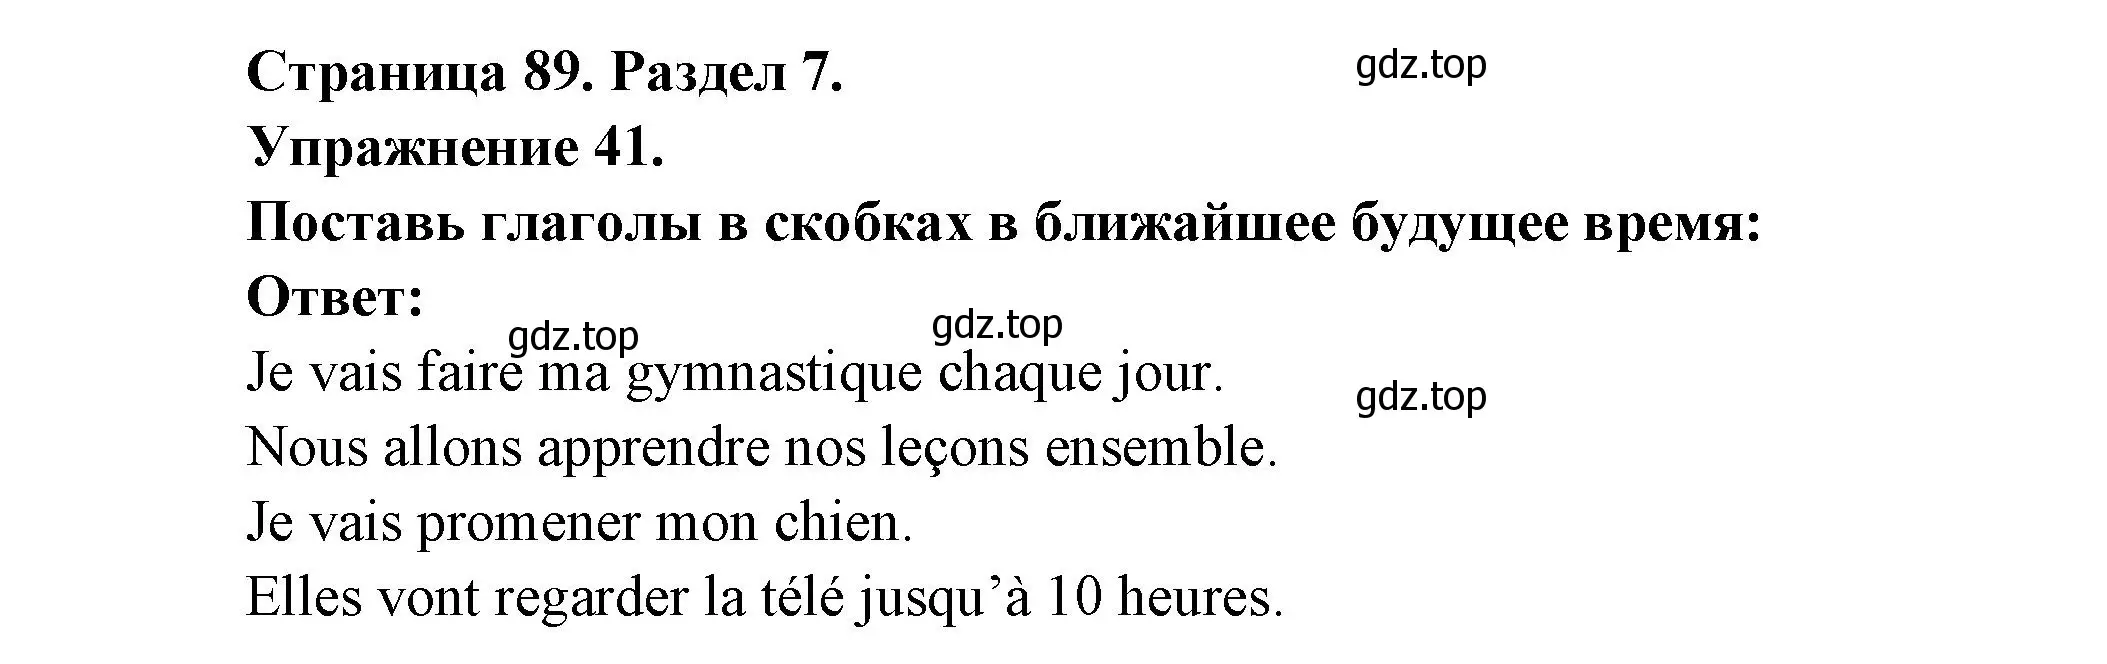 Решение номер 41 (страница 89) гдз по французскому языку 5 класс Береговская, Белосельская, учебник 2 часть